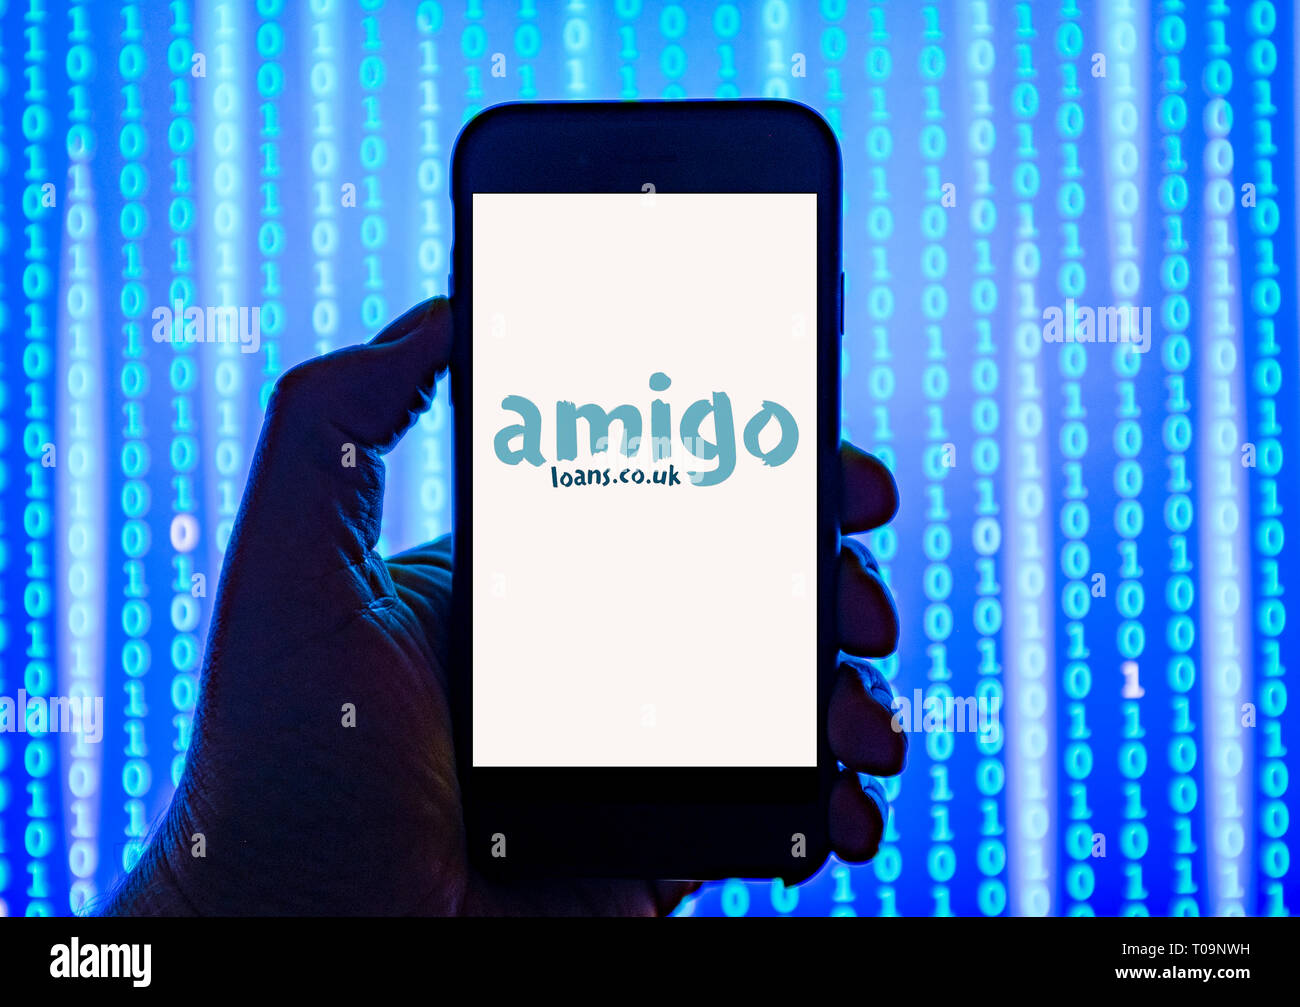 Persona sosteniendo el teléfono inteligente con Amigo.co.uk préstamos el logotipo de la empresa aparece en la pantalla. Foto de stock